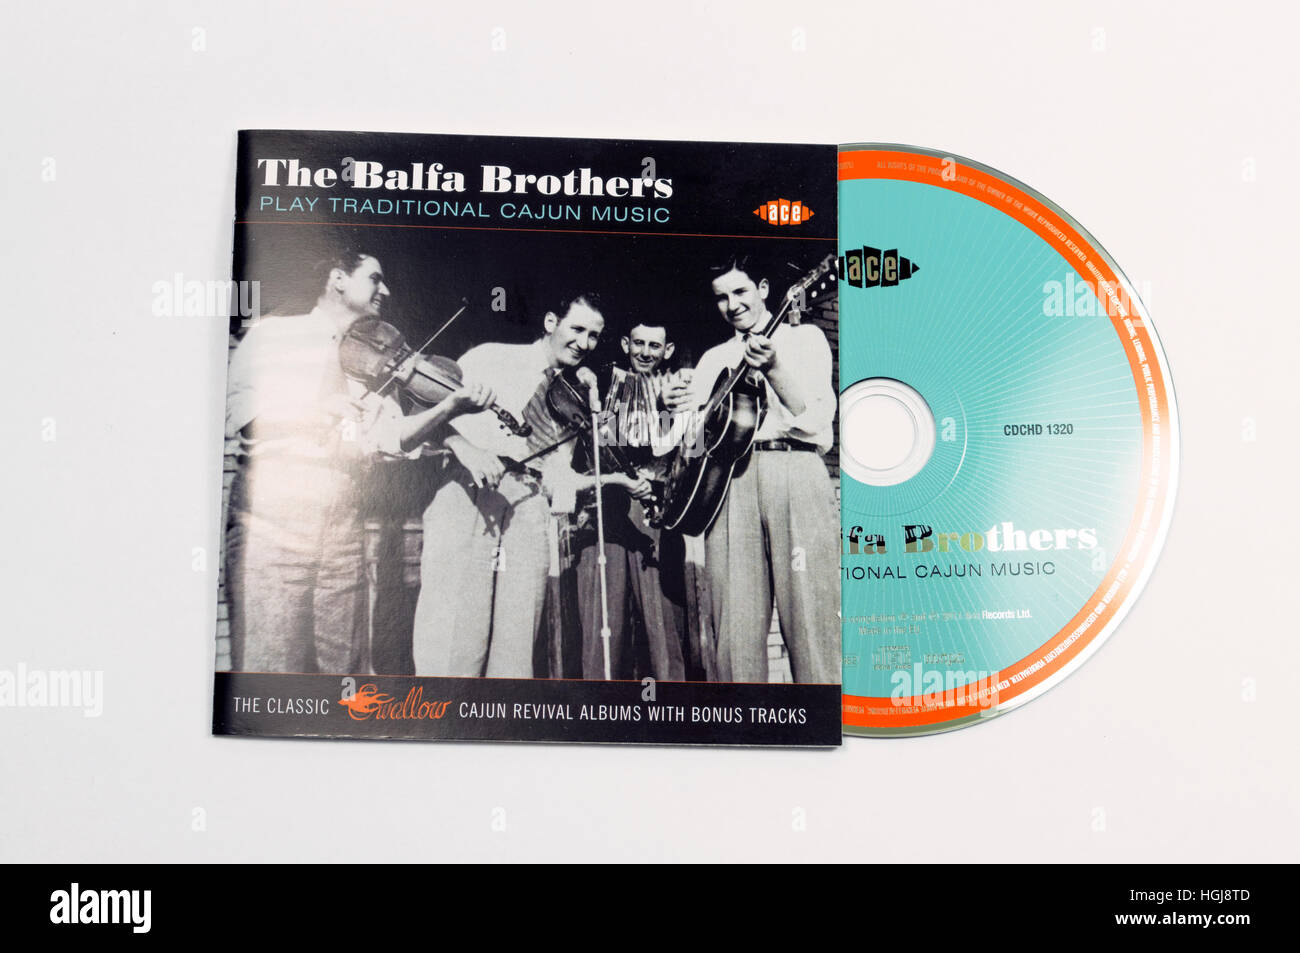 L'Balfa Brothers 'Jouer' album de musique Cajun traditionnel Banque D'Images